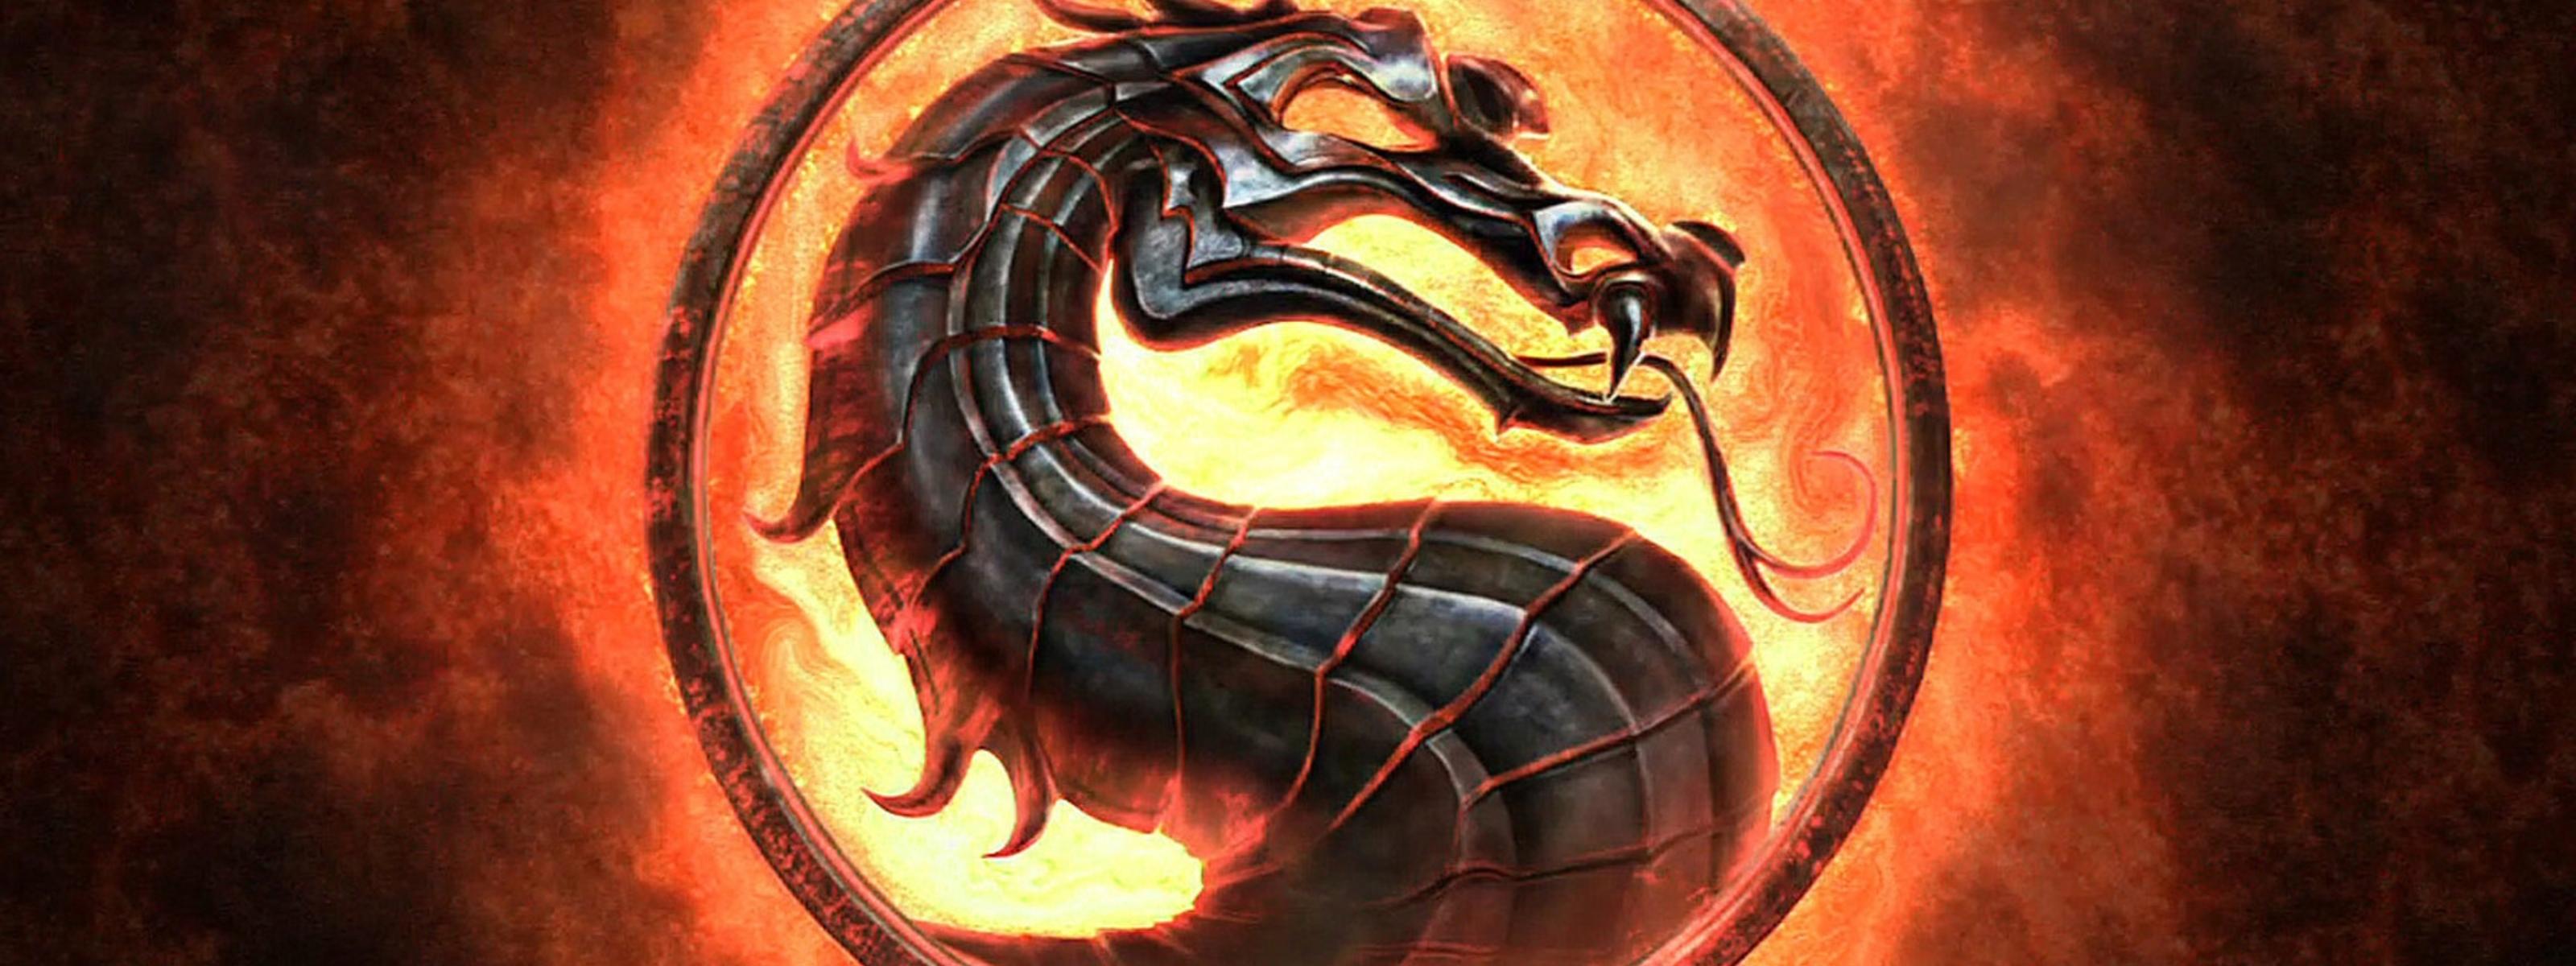 Mortal Kombat dragon logo HD